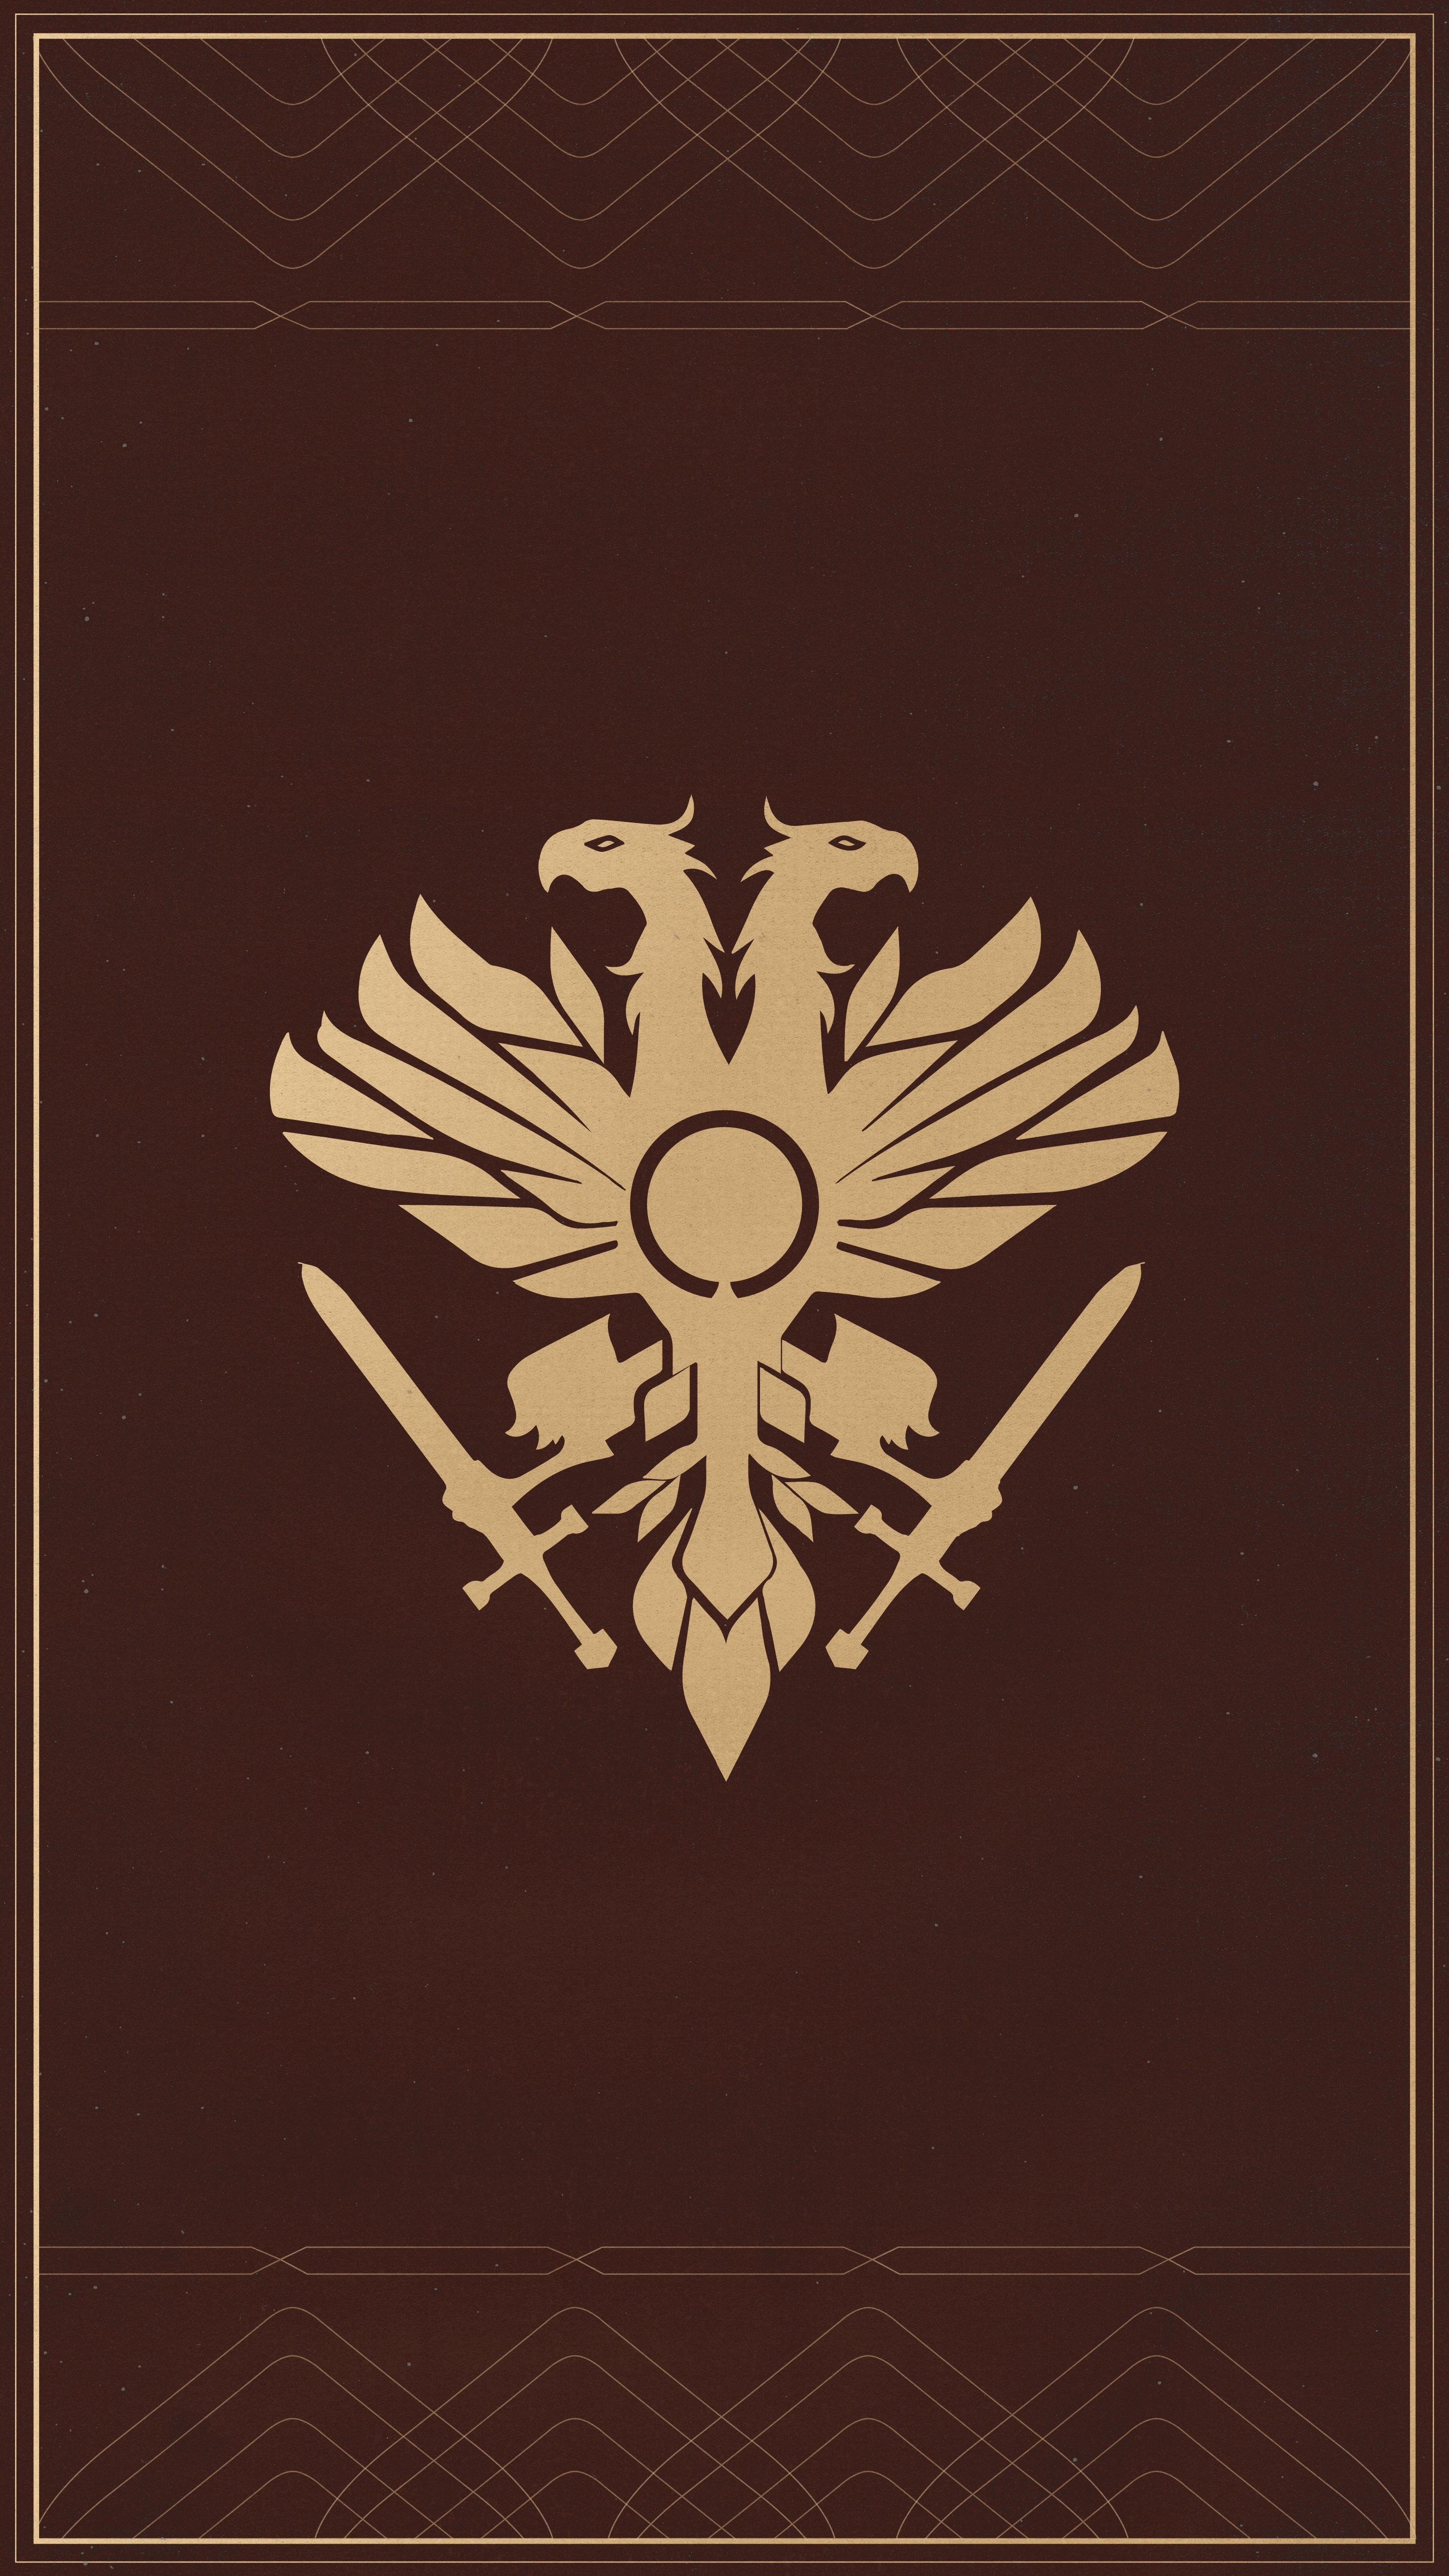 Destiny 2 iPhone Emblem Wallpaper